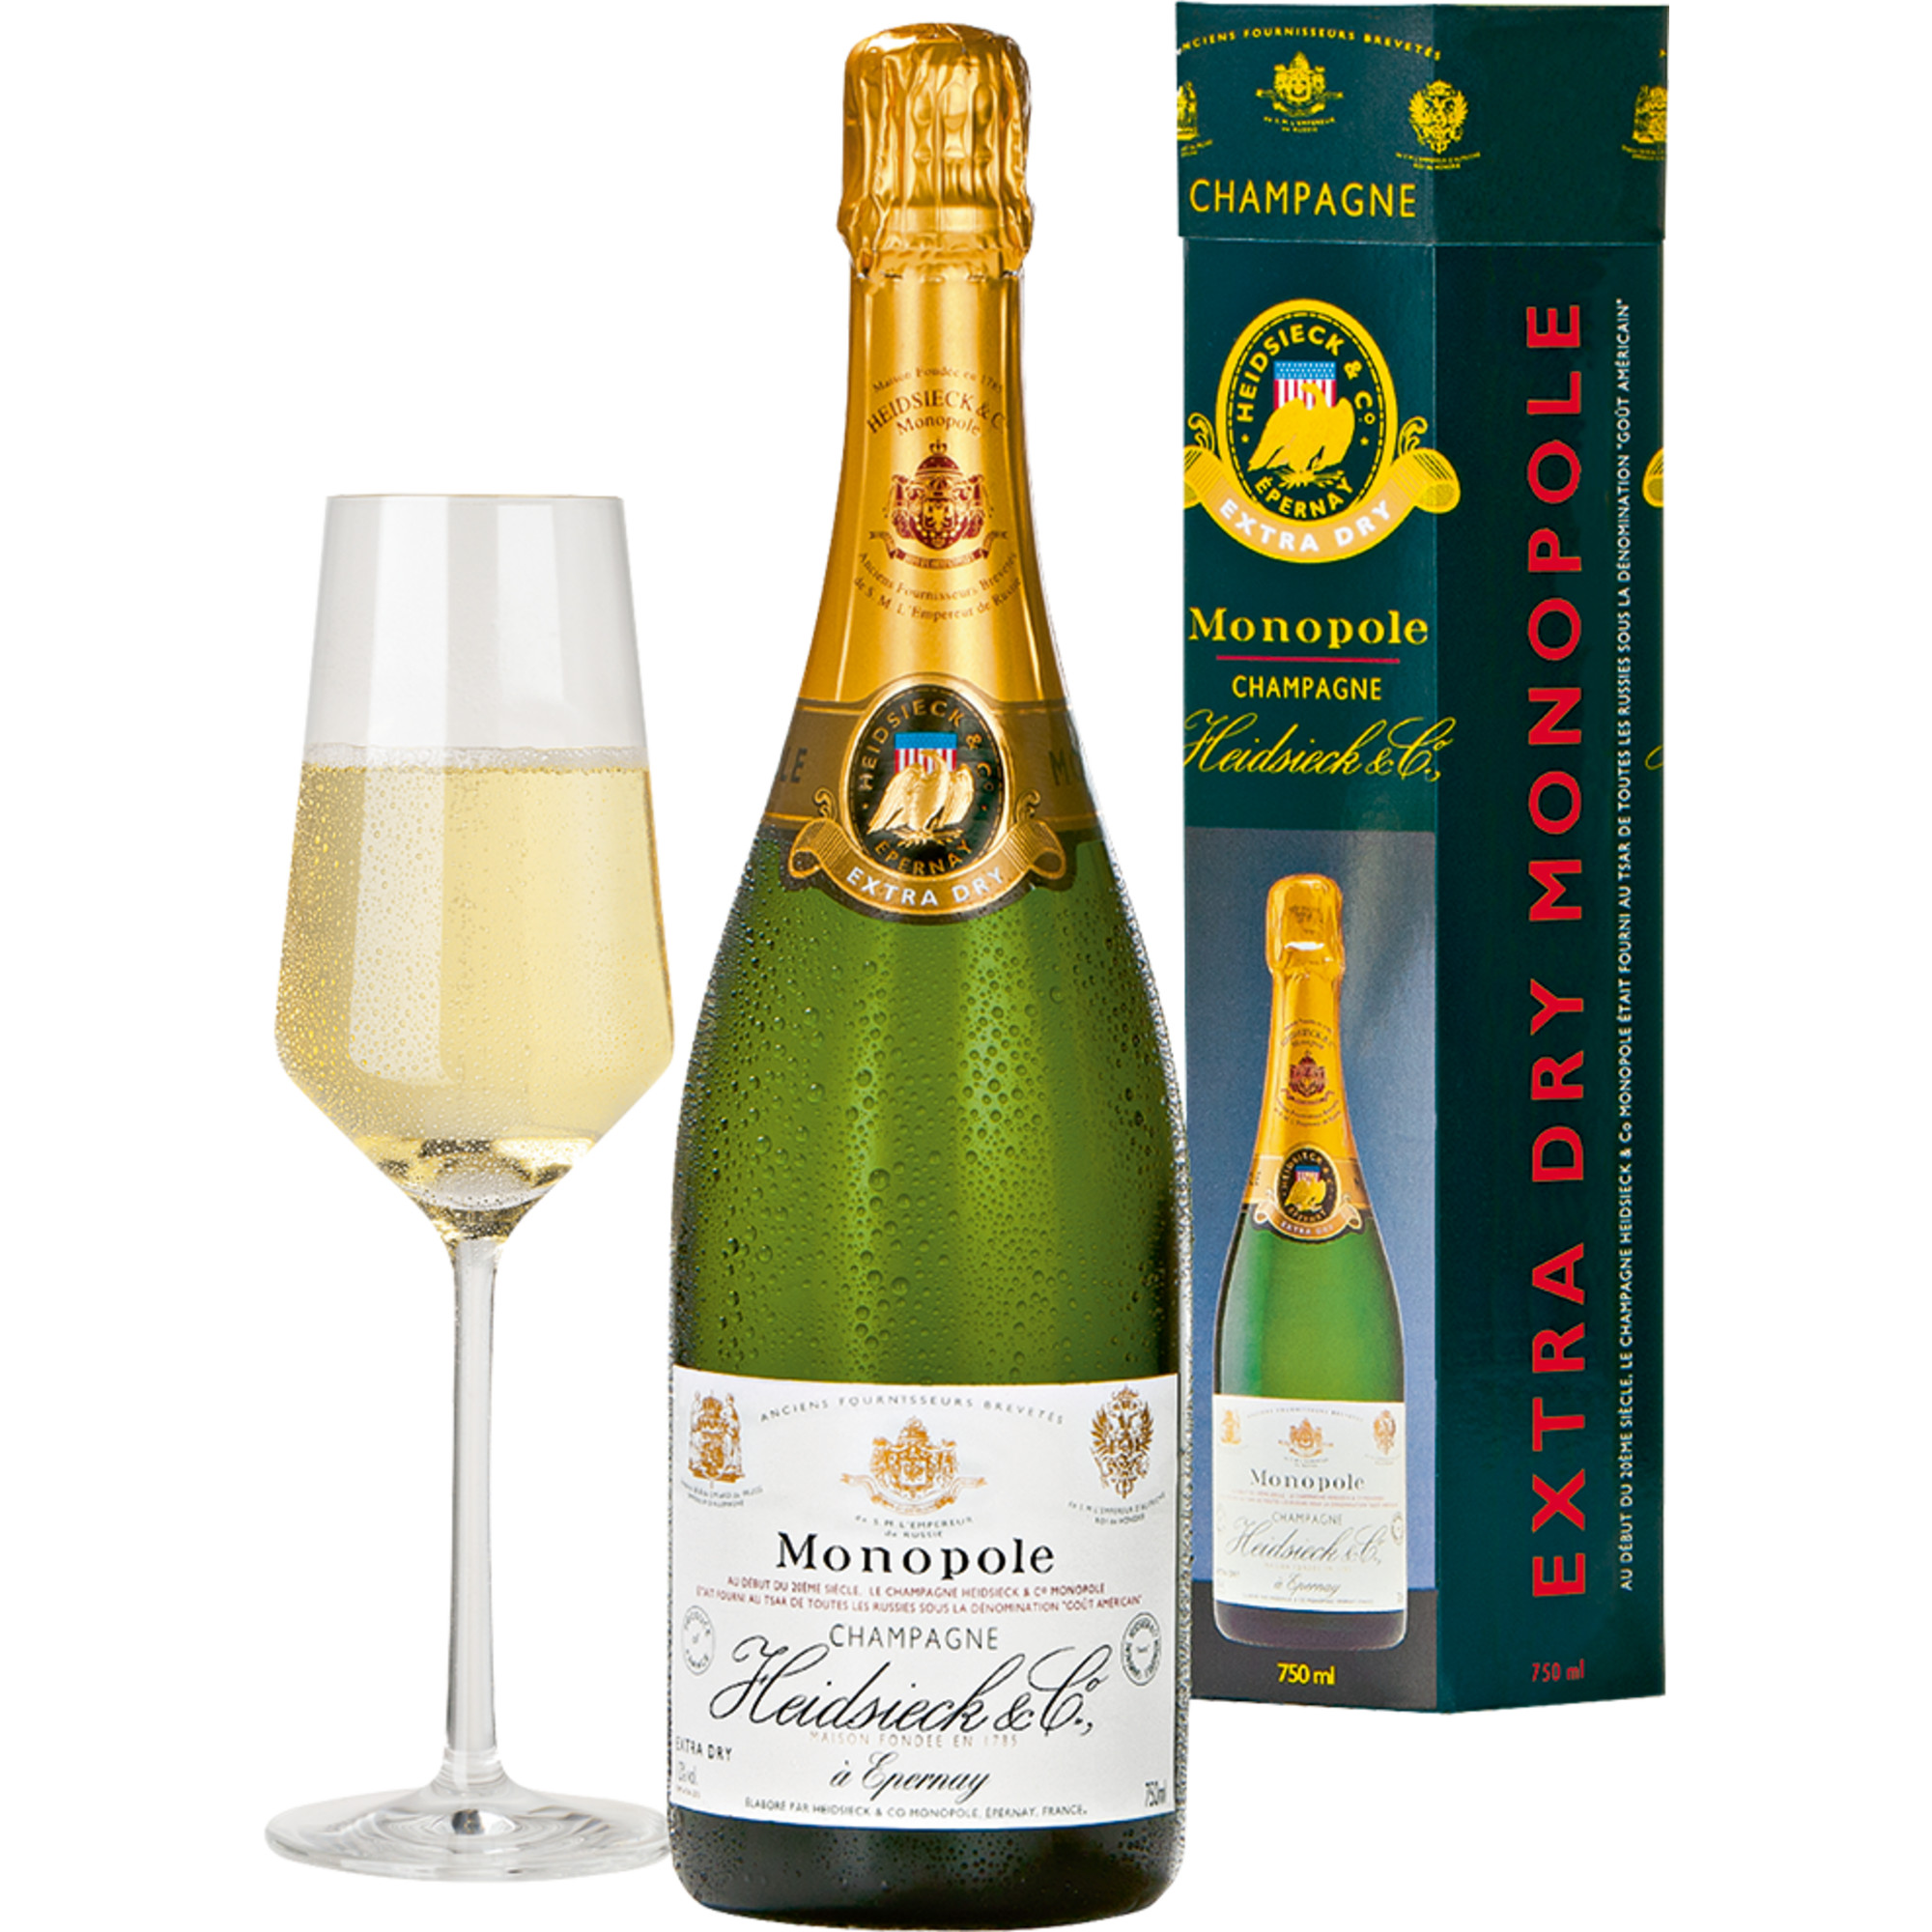 Champagne Heidsieck Monopole, Extra Dry, Champagne AC, Geschenketui, Champagne, Präsente  Champagner Hawesko